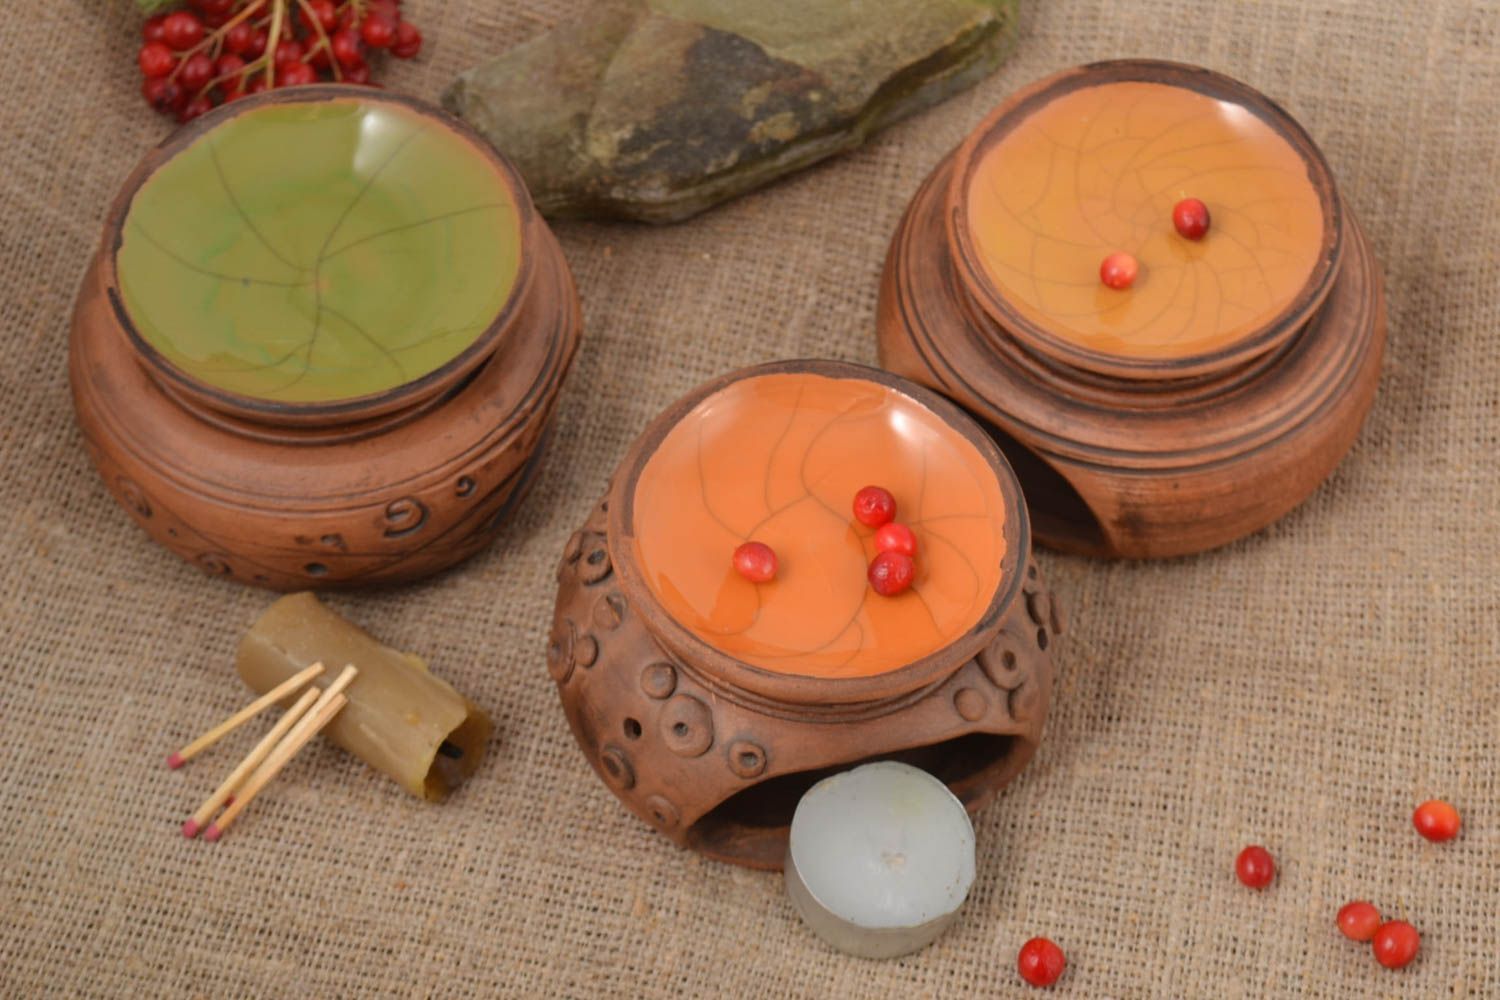 Set de difusores de aromaterapia regalos para mujeres decoración de interior foto 1